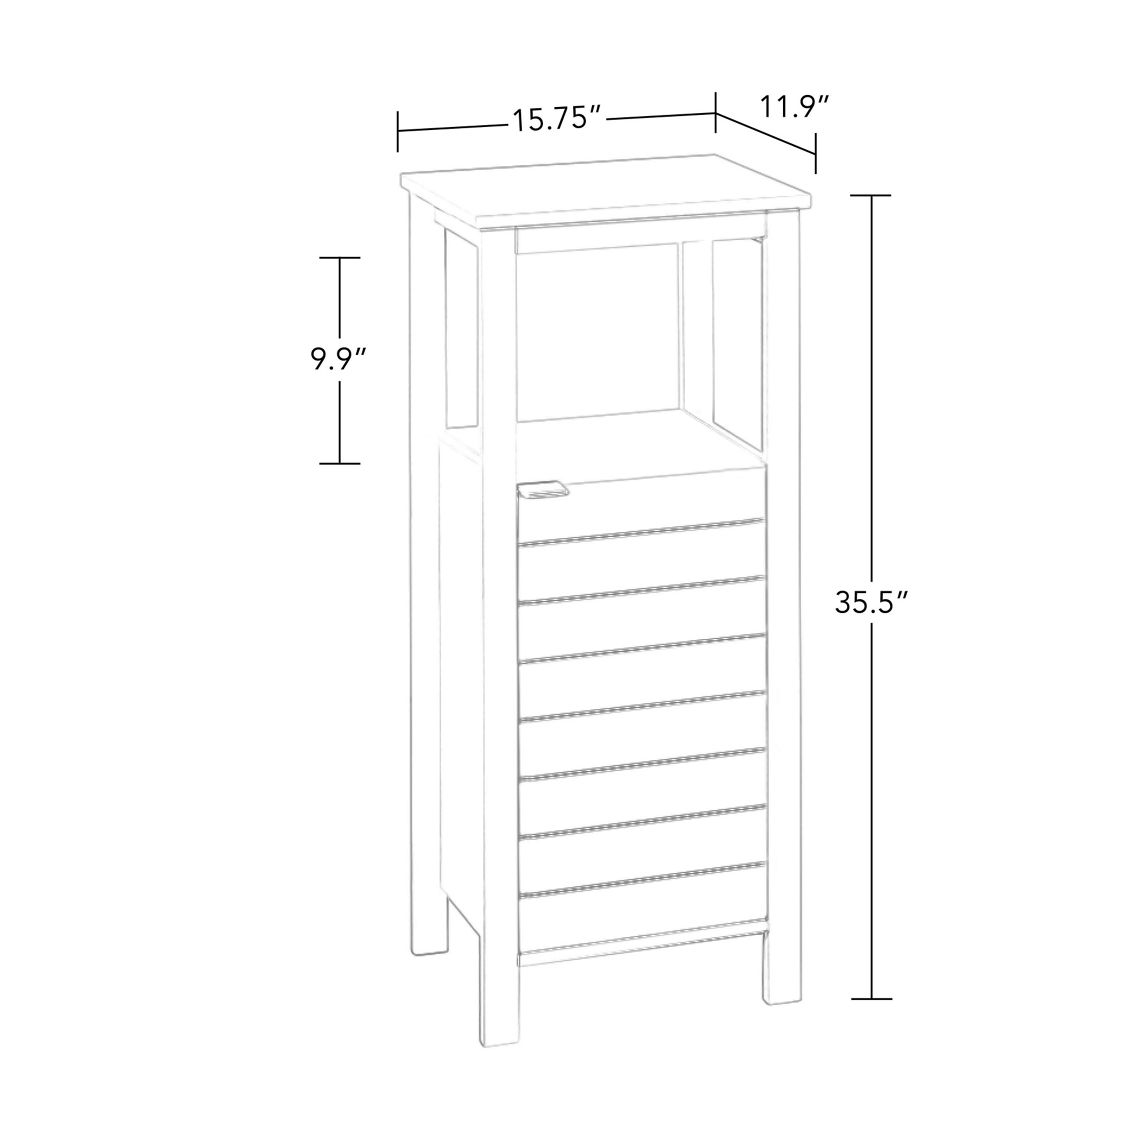 RiverRidge Madison Single Door Floor Cabinet - Image 3 of 5